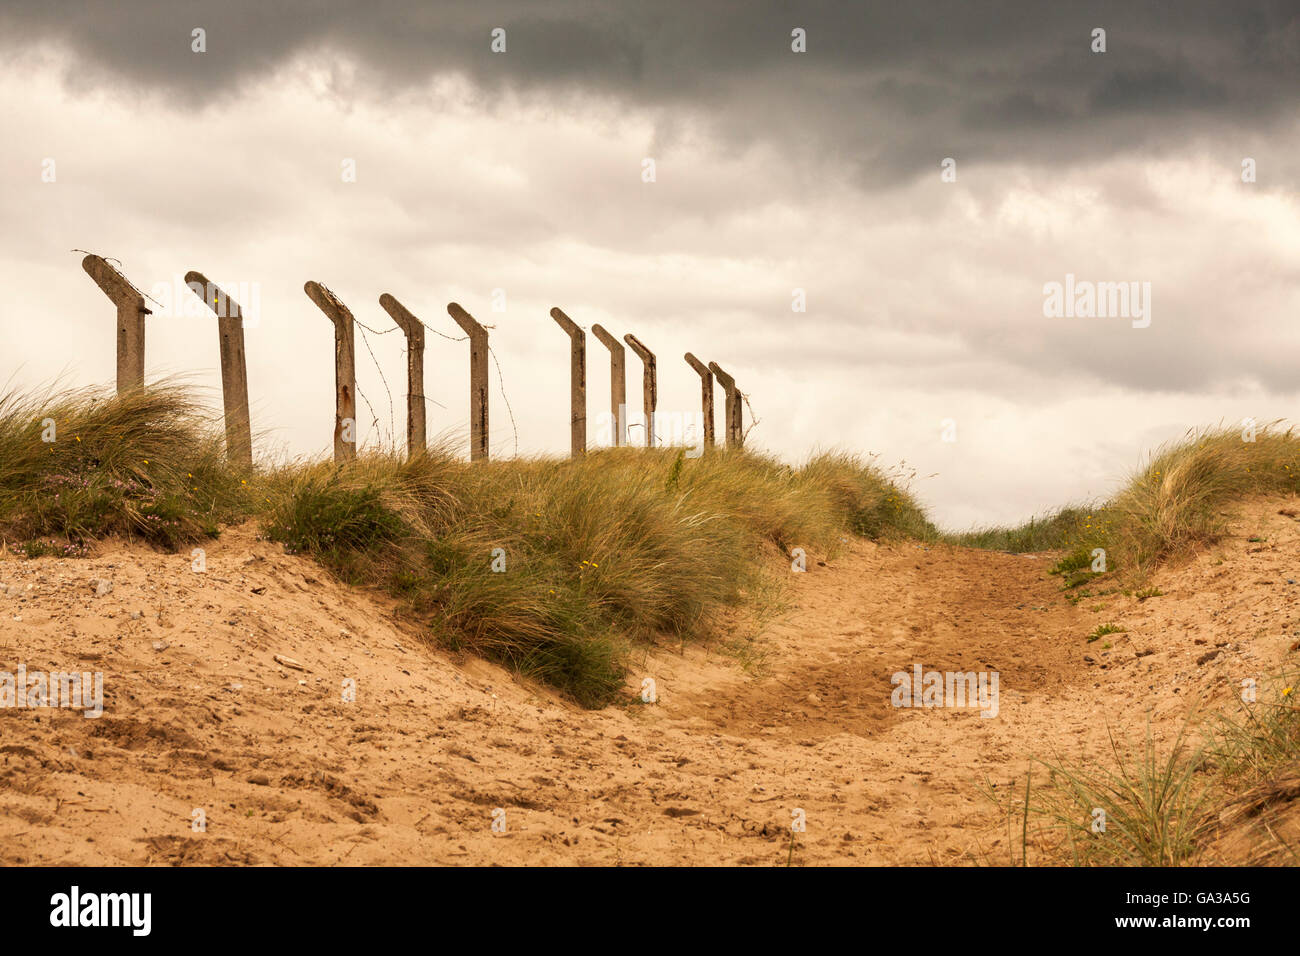 Grassy dune di sabbia e angolata pali da recinzione insieme con un moody sky in una spiaggia a Hartlepool nel nord est dell' Inghilterra Foto Stock